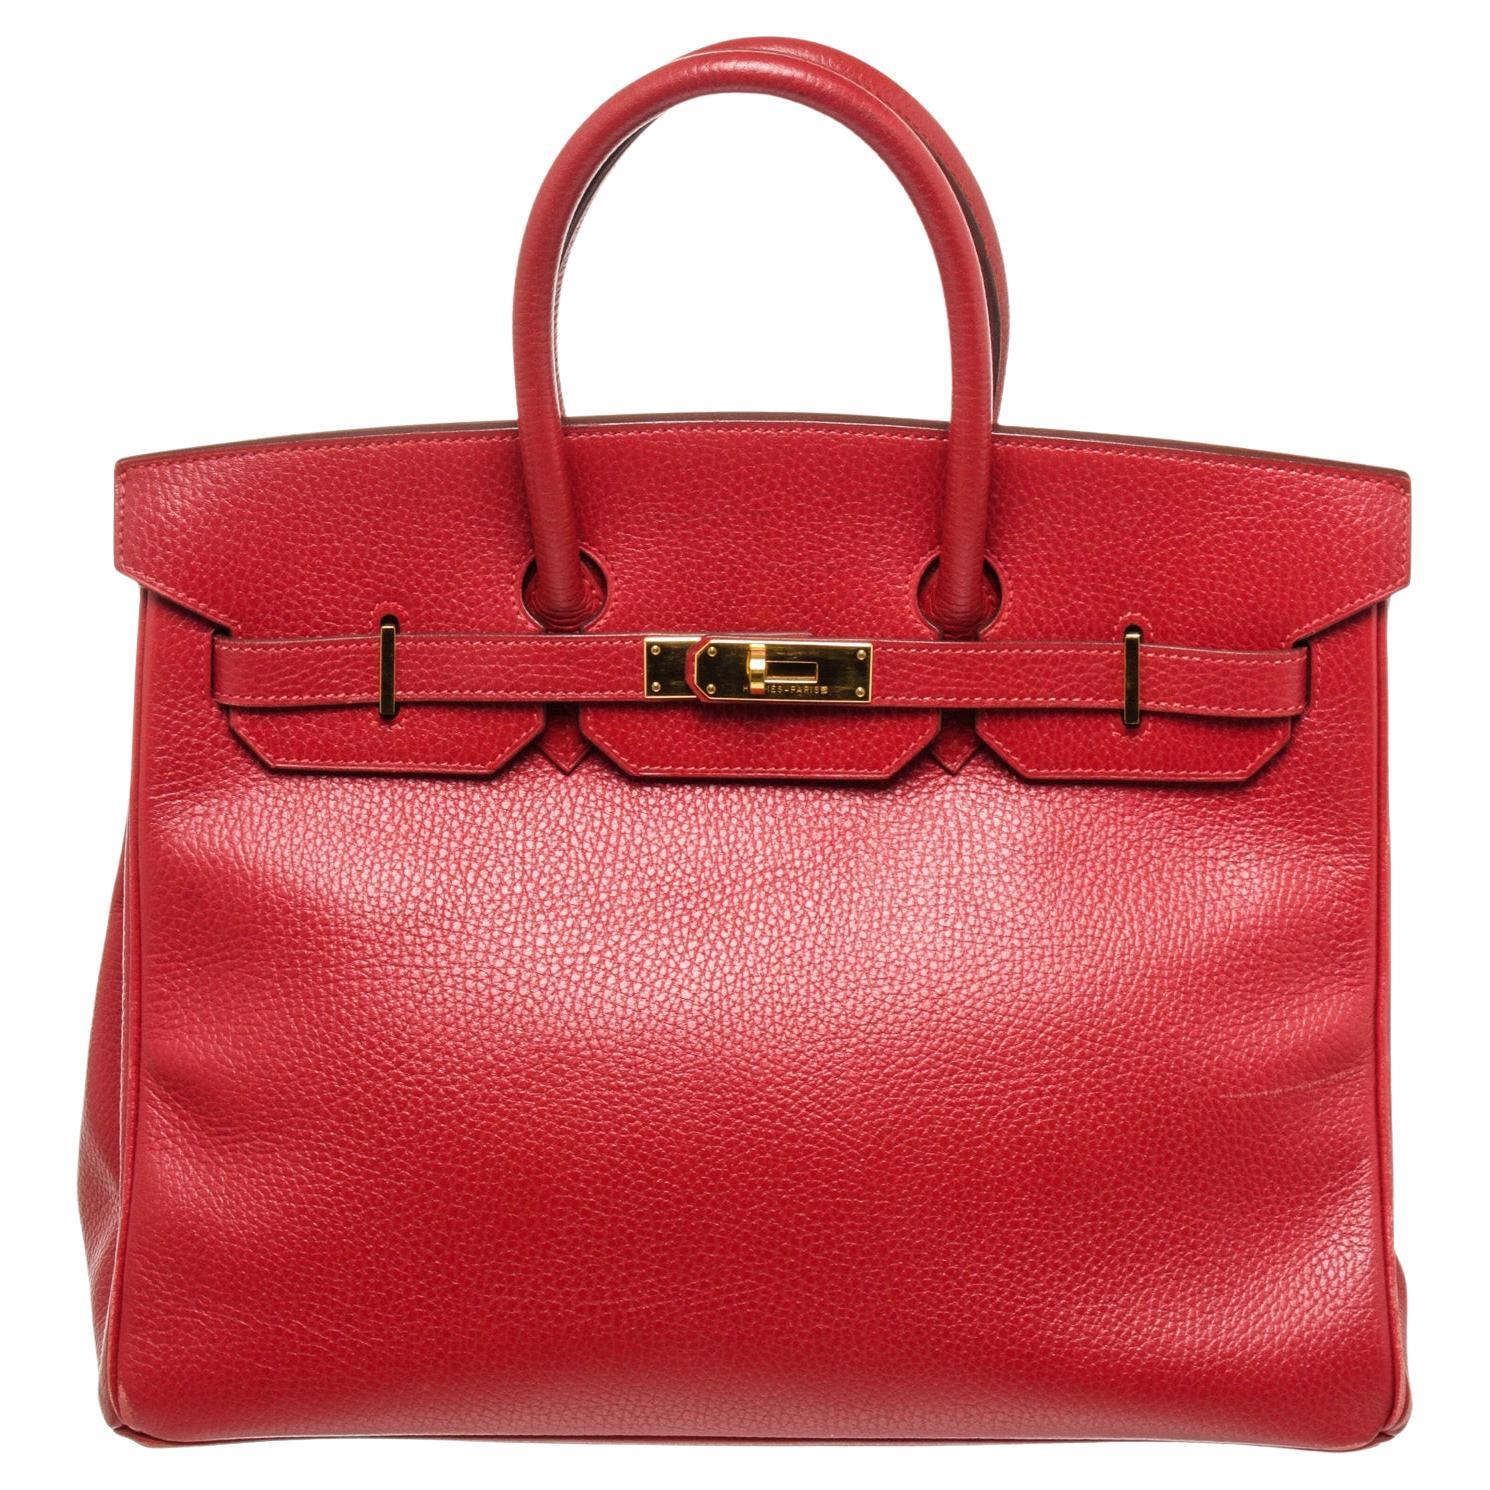 Hermes Red Leather Birkin 35cm Satchel Bag